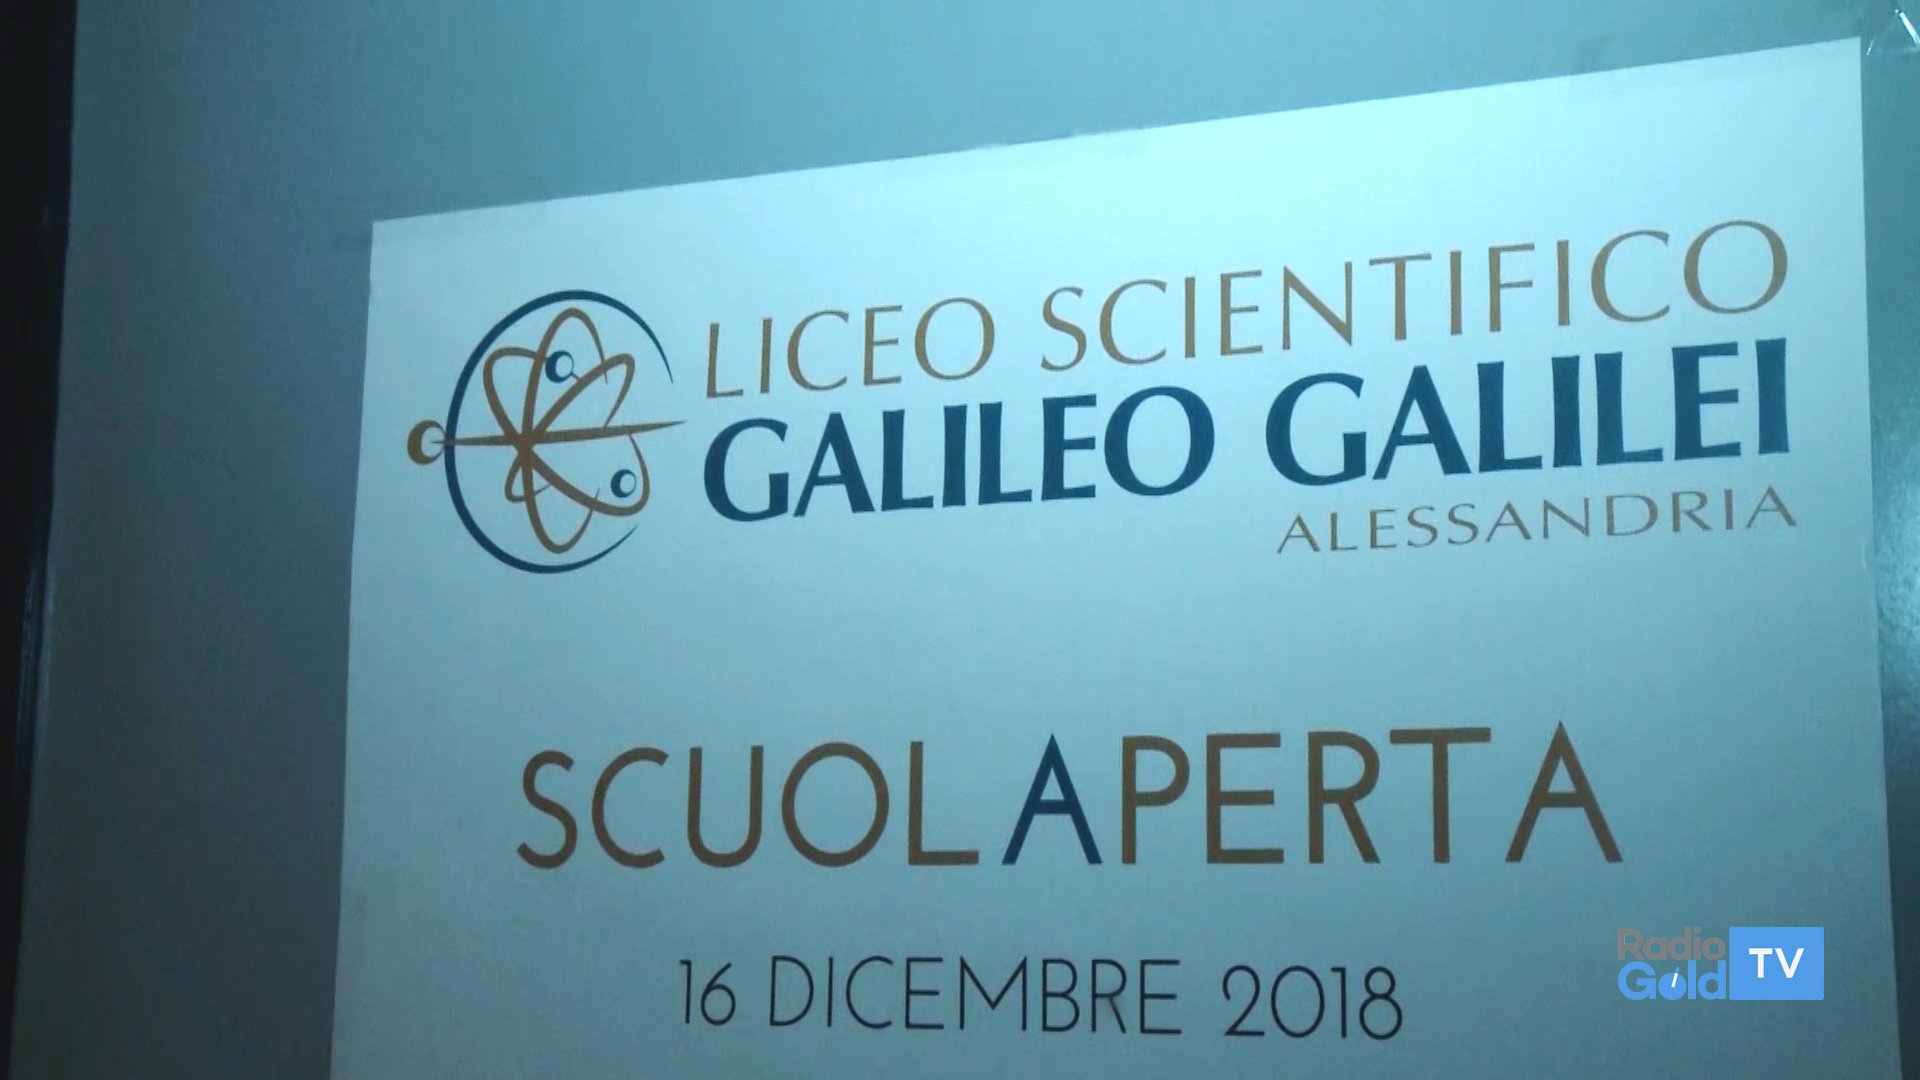 Porte aperte domenica 16 dicembre al Liceo Scientifico “Galileo Galilei” di Alessandria